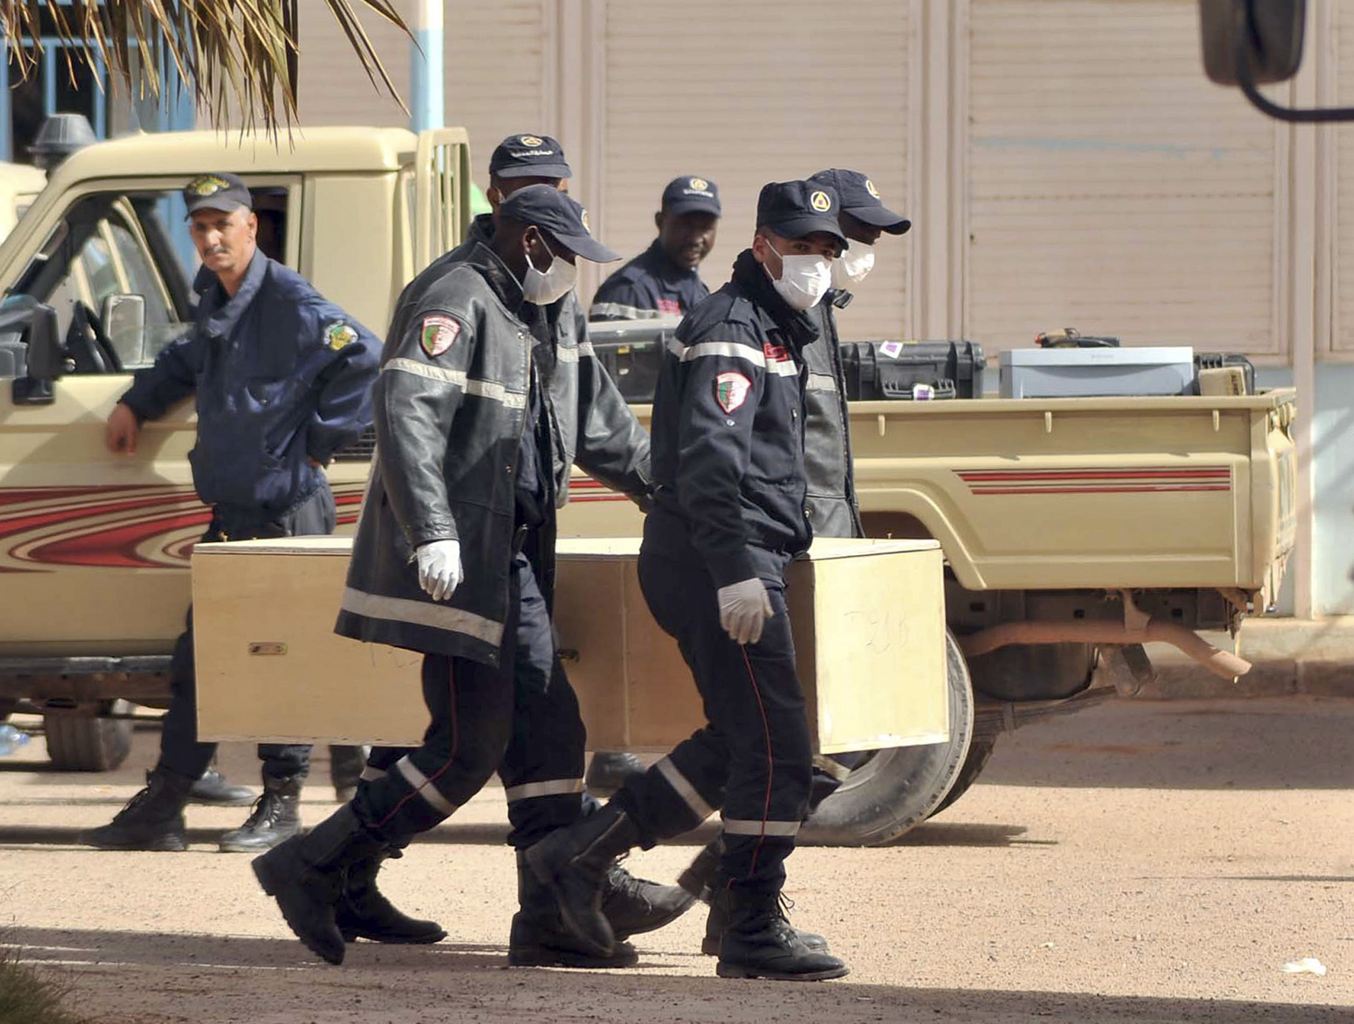 阿尔及利亚人质事件致37名外国人遇难 两加拿